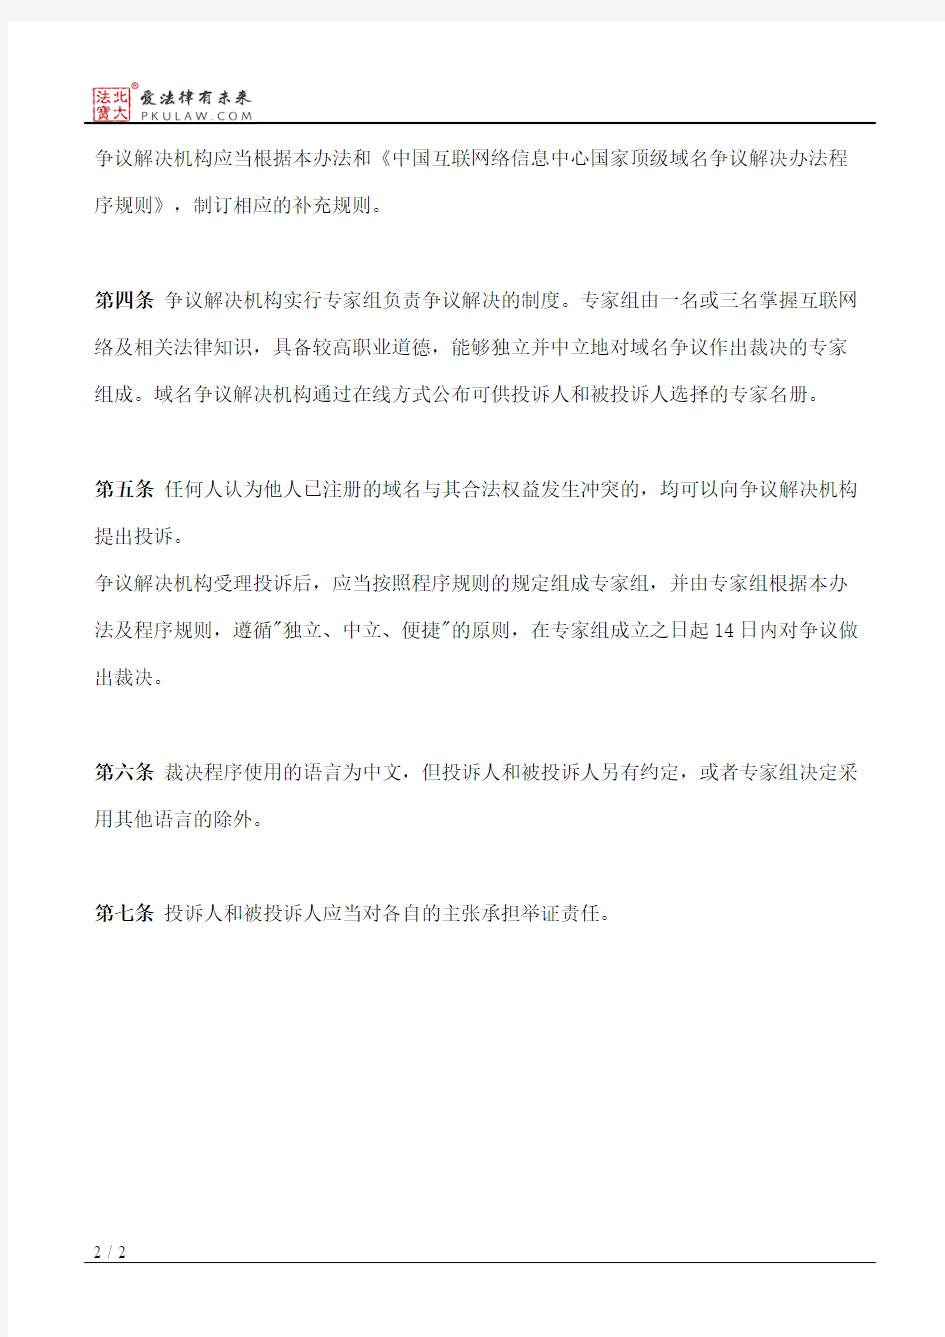 中国互联网络信息中心域名争议解决办法(2014修订)